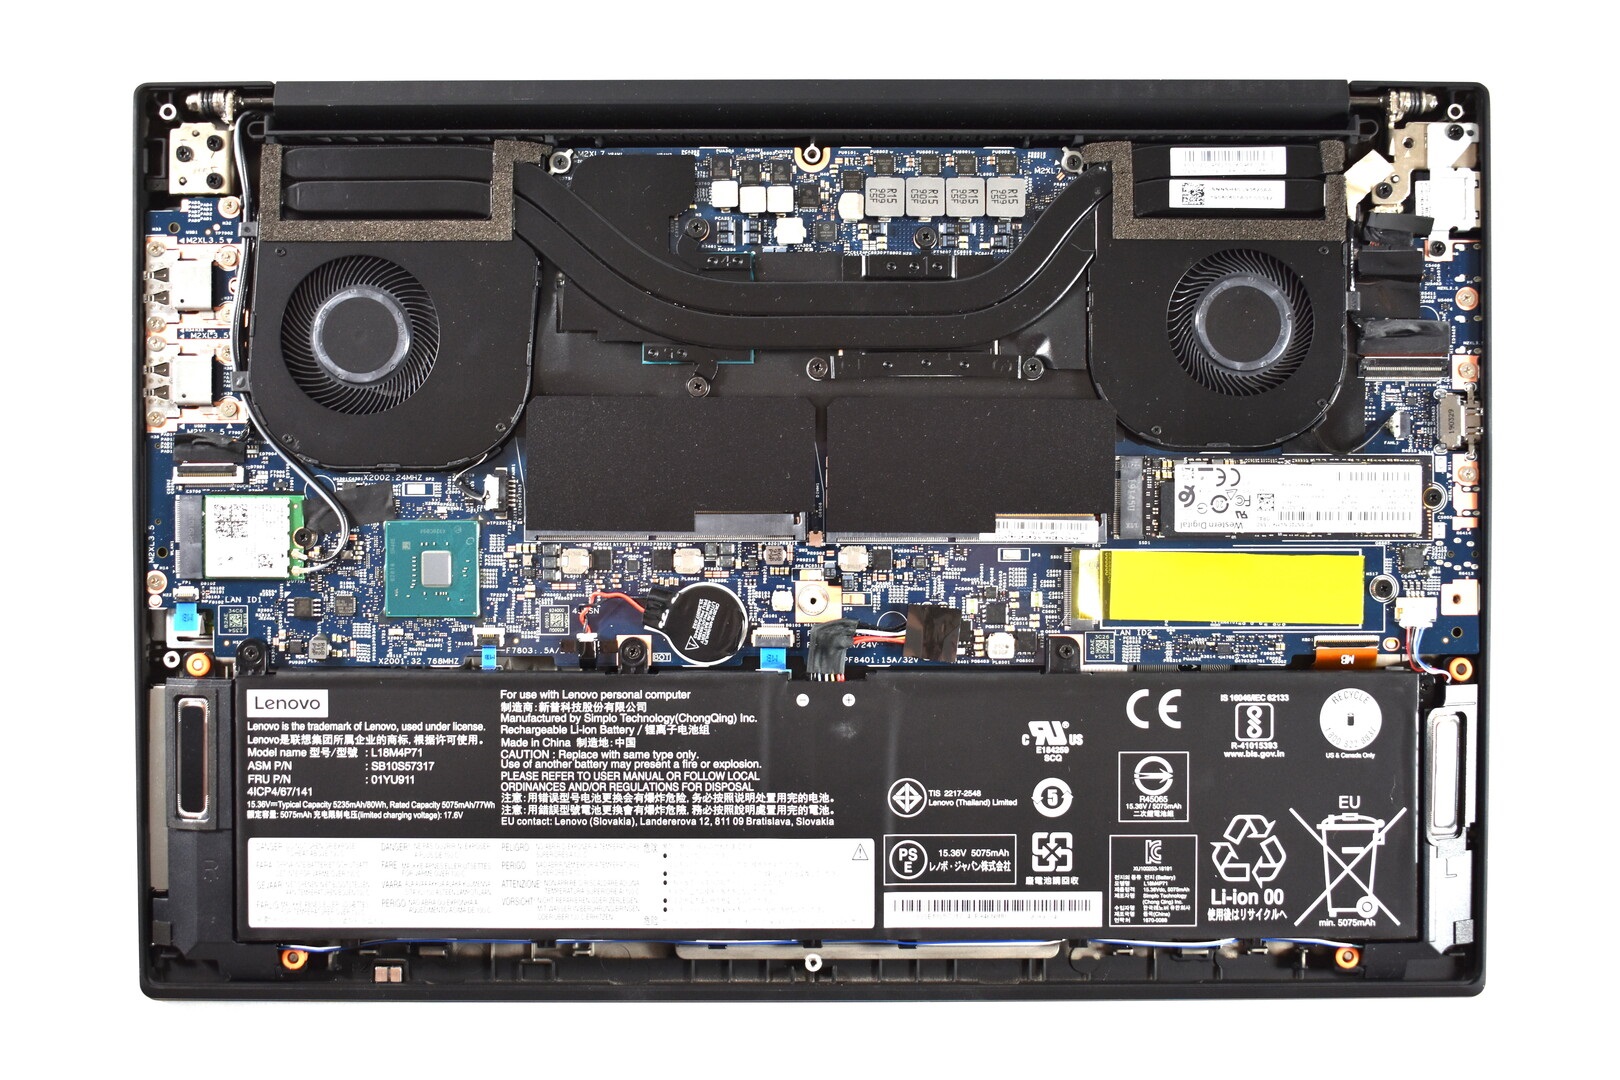 Đánh giá laptop Lenovo ThinkPad P1 Gen 2 2019: Máy trạm cao cấp, Chuyên trang tư vấn laptop